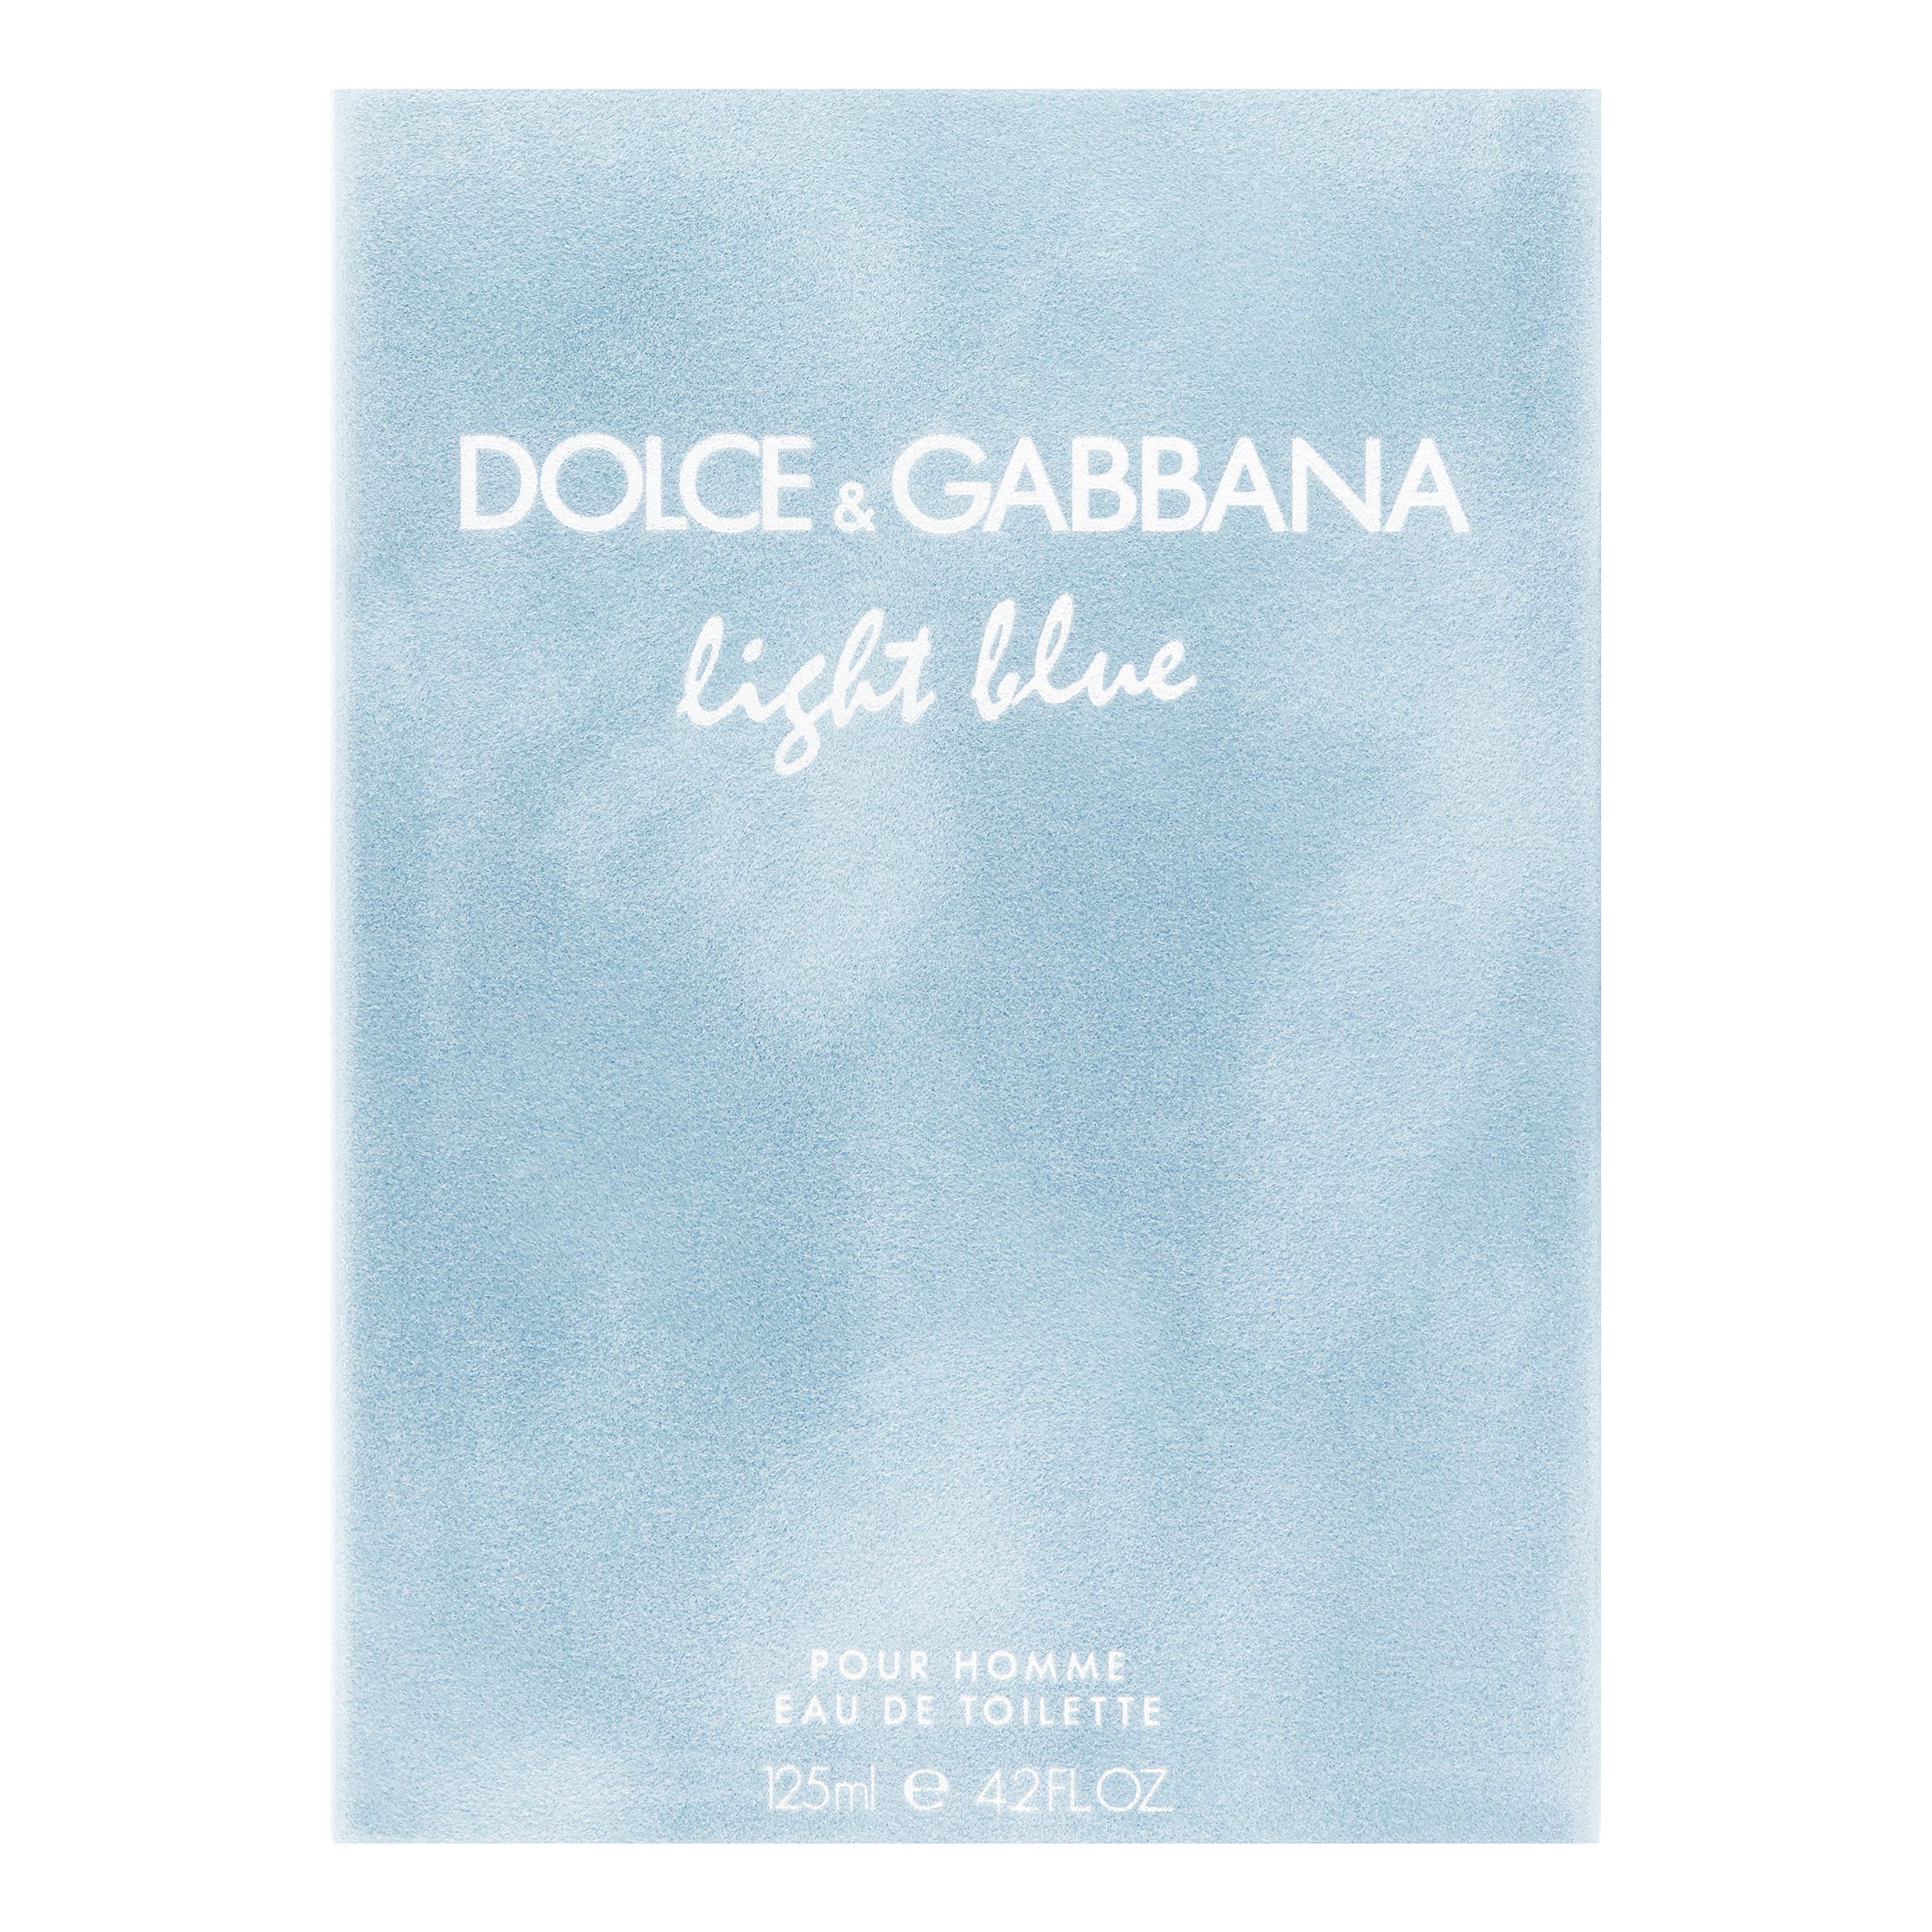 Dolce & Gabbana Light Blue Eau de Toilette, Cologne for Men, 4.2 Oz - image 3 of 6